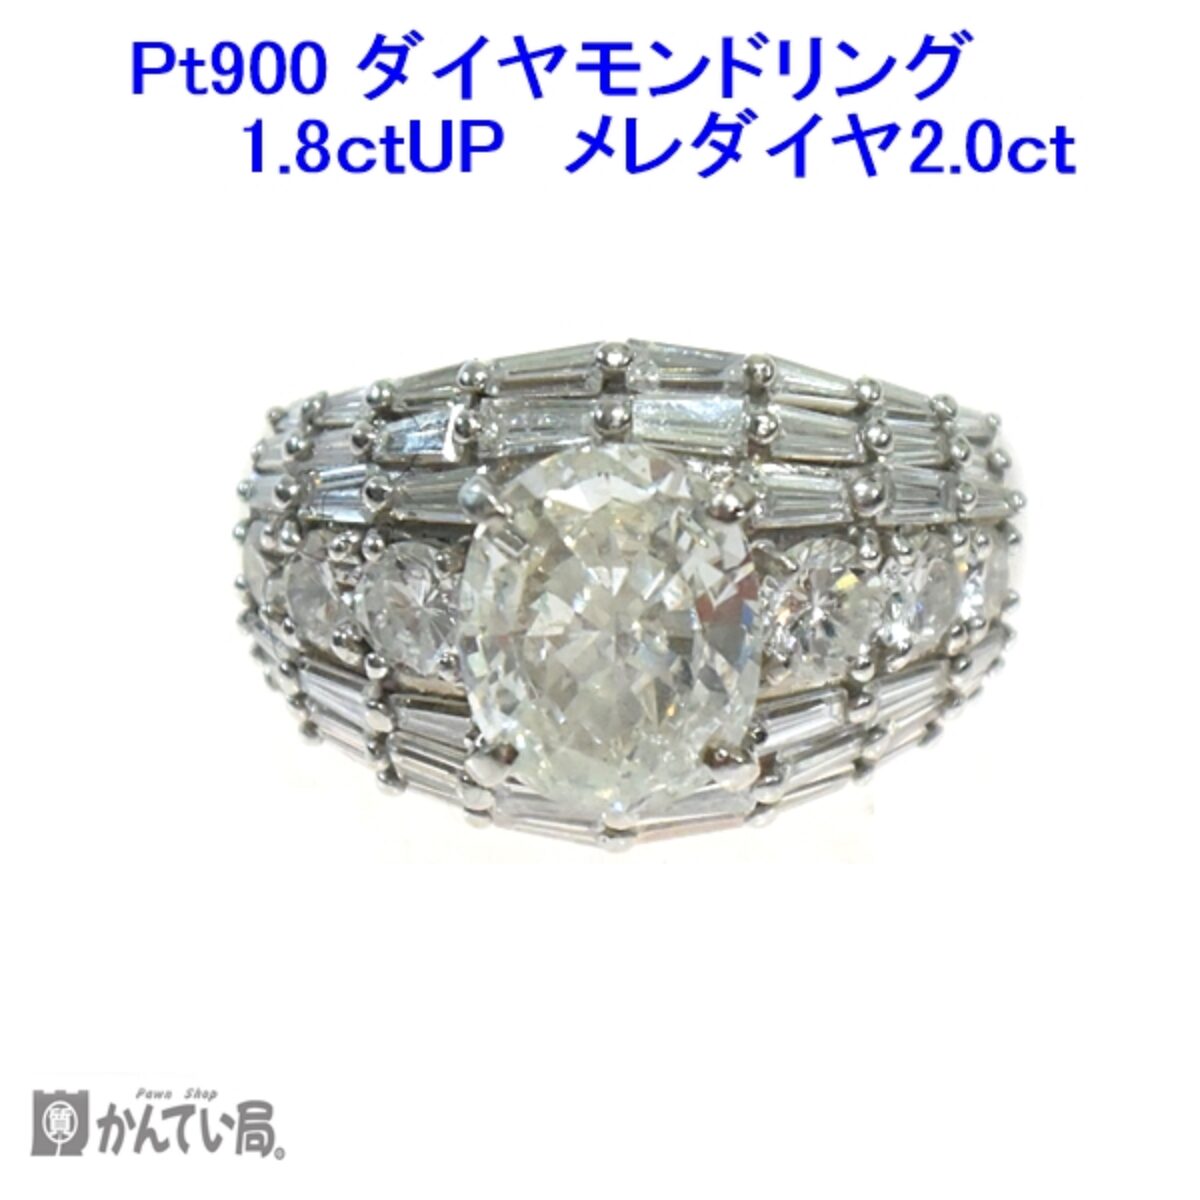 クマパック➉ 1.8ct ダイヤ フラワーリング pt900 の通販 by panica's